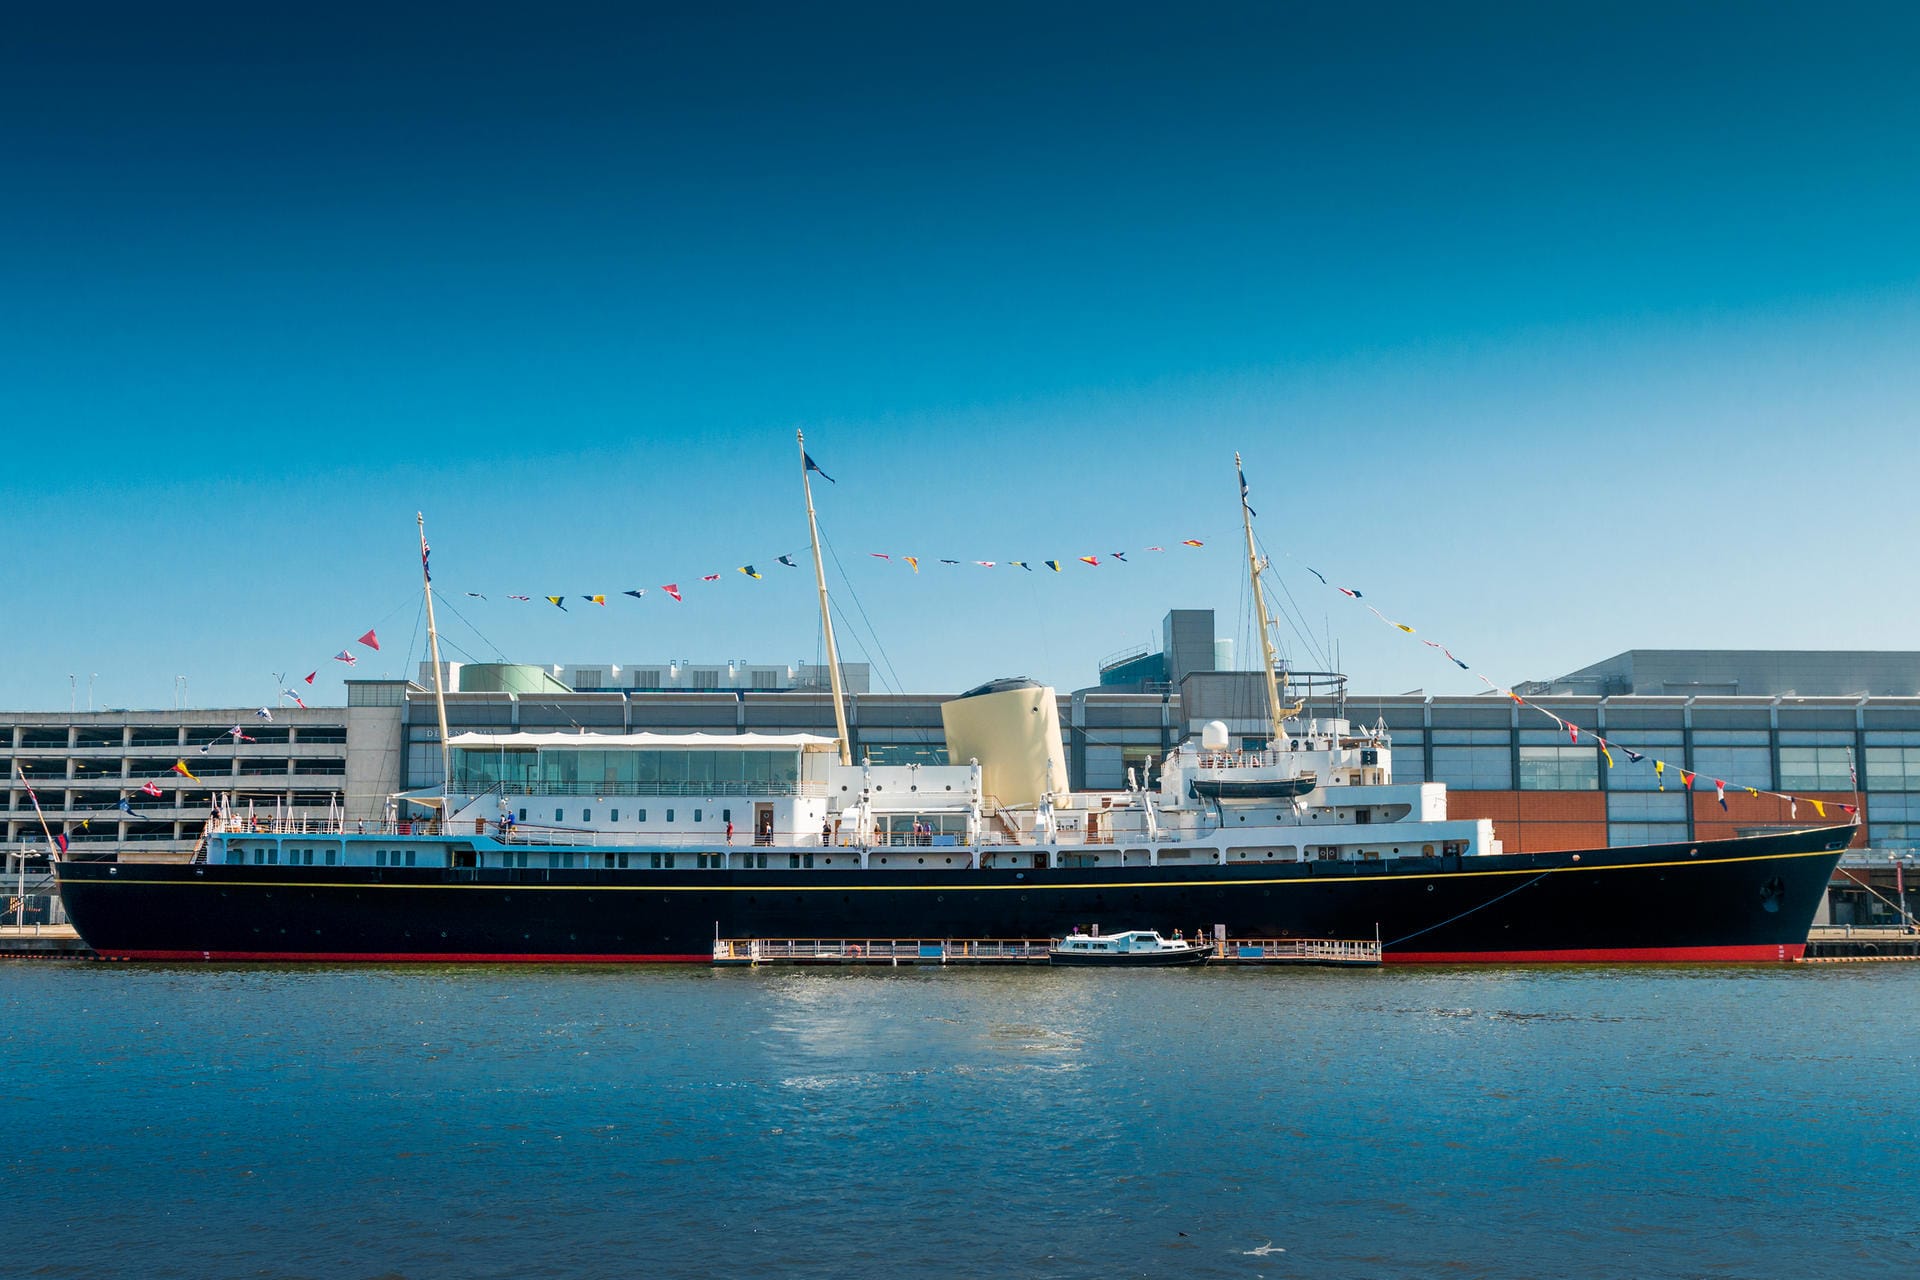 Von 1953 bis 1997 brachte sie die königliche Familie in alle Welt – heute liegt die "Britannia" als Attraktion für Touristen im Hafen von Leith bei Edinburgh.